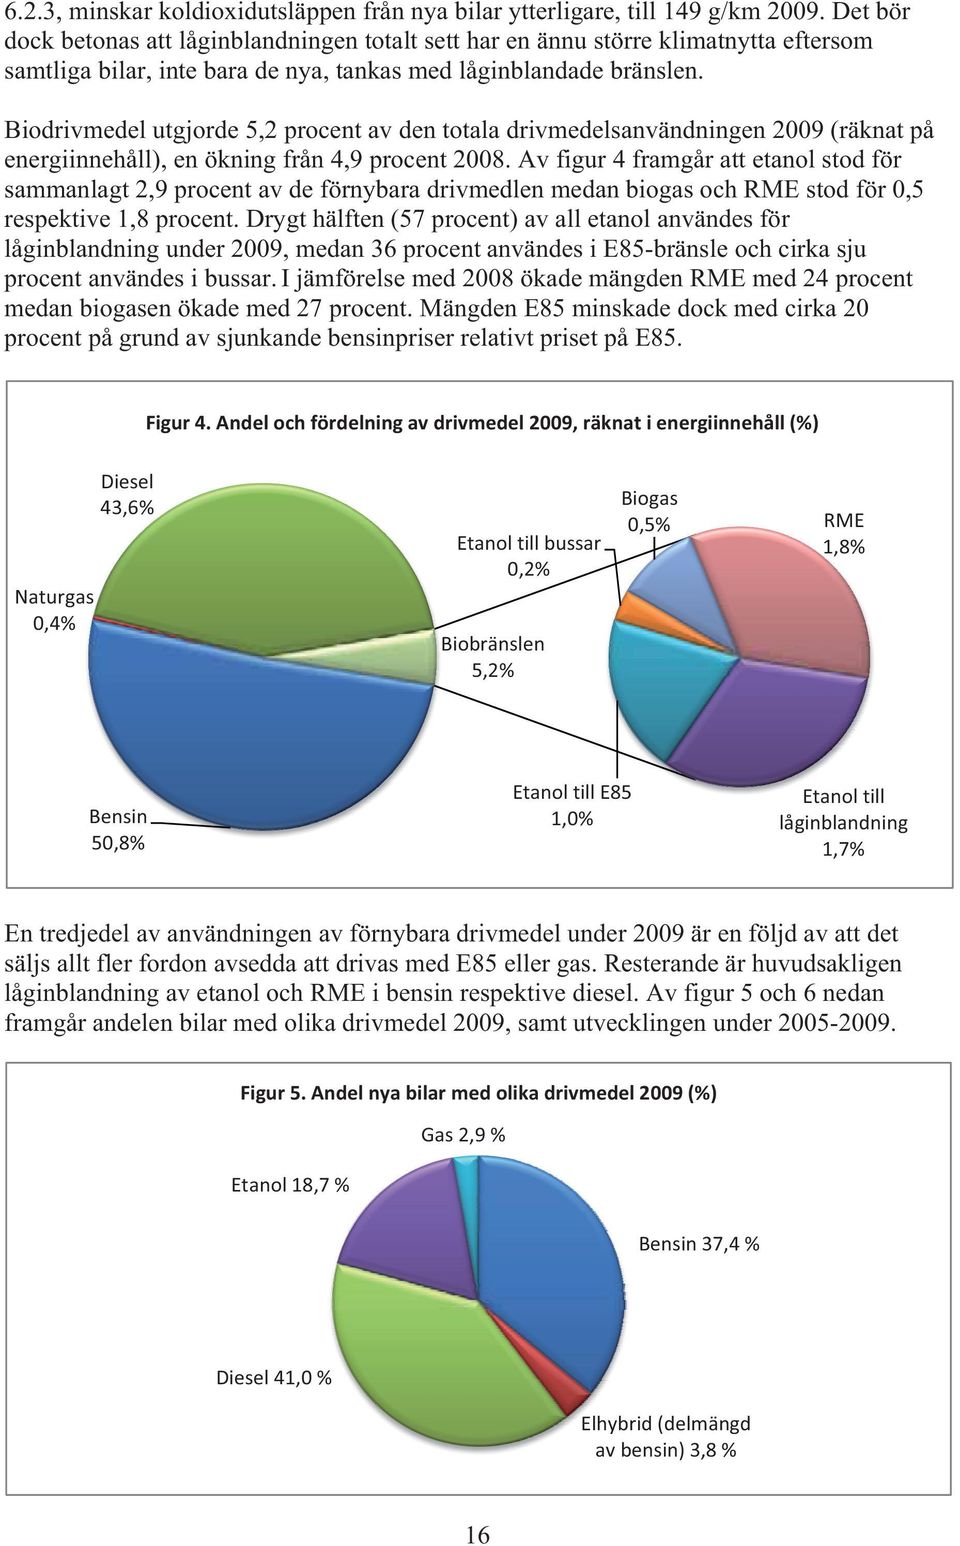 Biodrivmedel utgjorde 5,2 procent av den totala drivmedelsanvändningen 2009 (räknat på energiinnehåll), en ökning från 4,9 procent 2008.